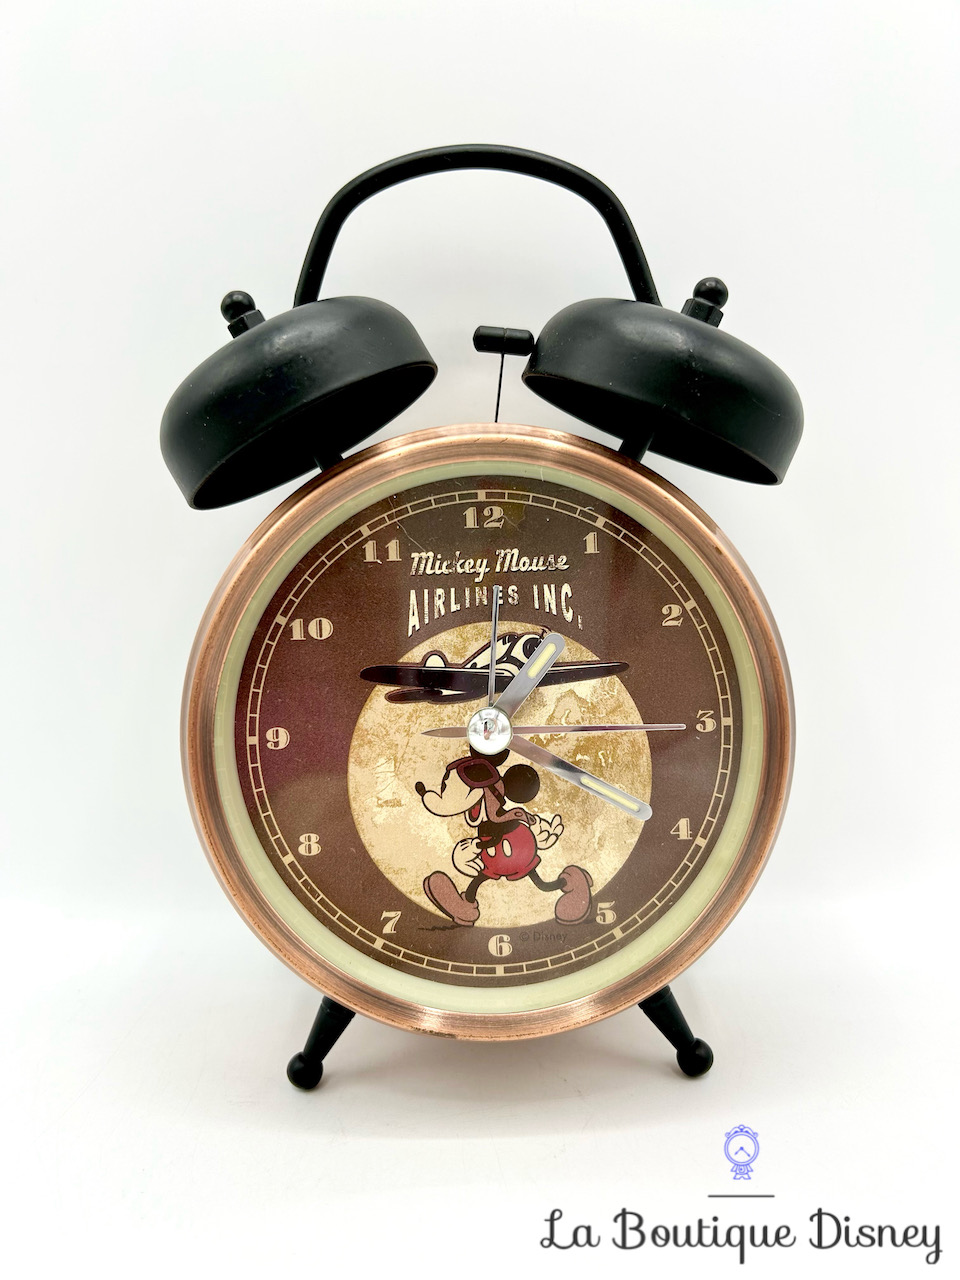 Réveil Mickey Mouse Airlines INC Disneyland Paris Disney horloge aviateur marron